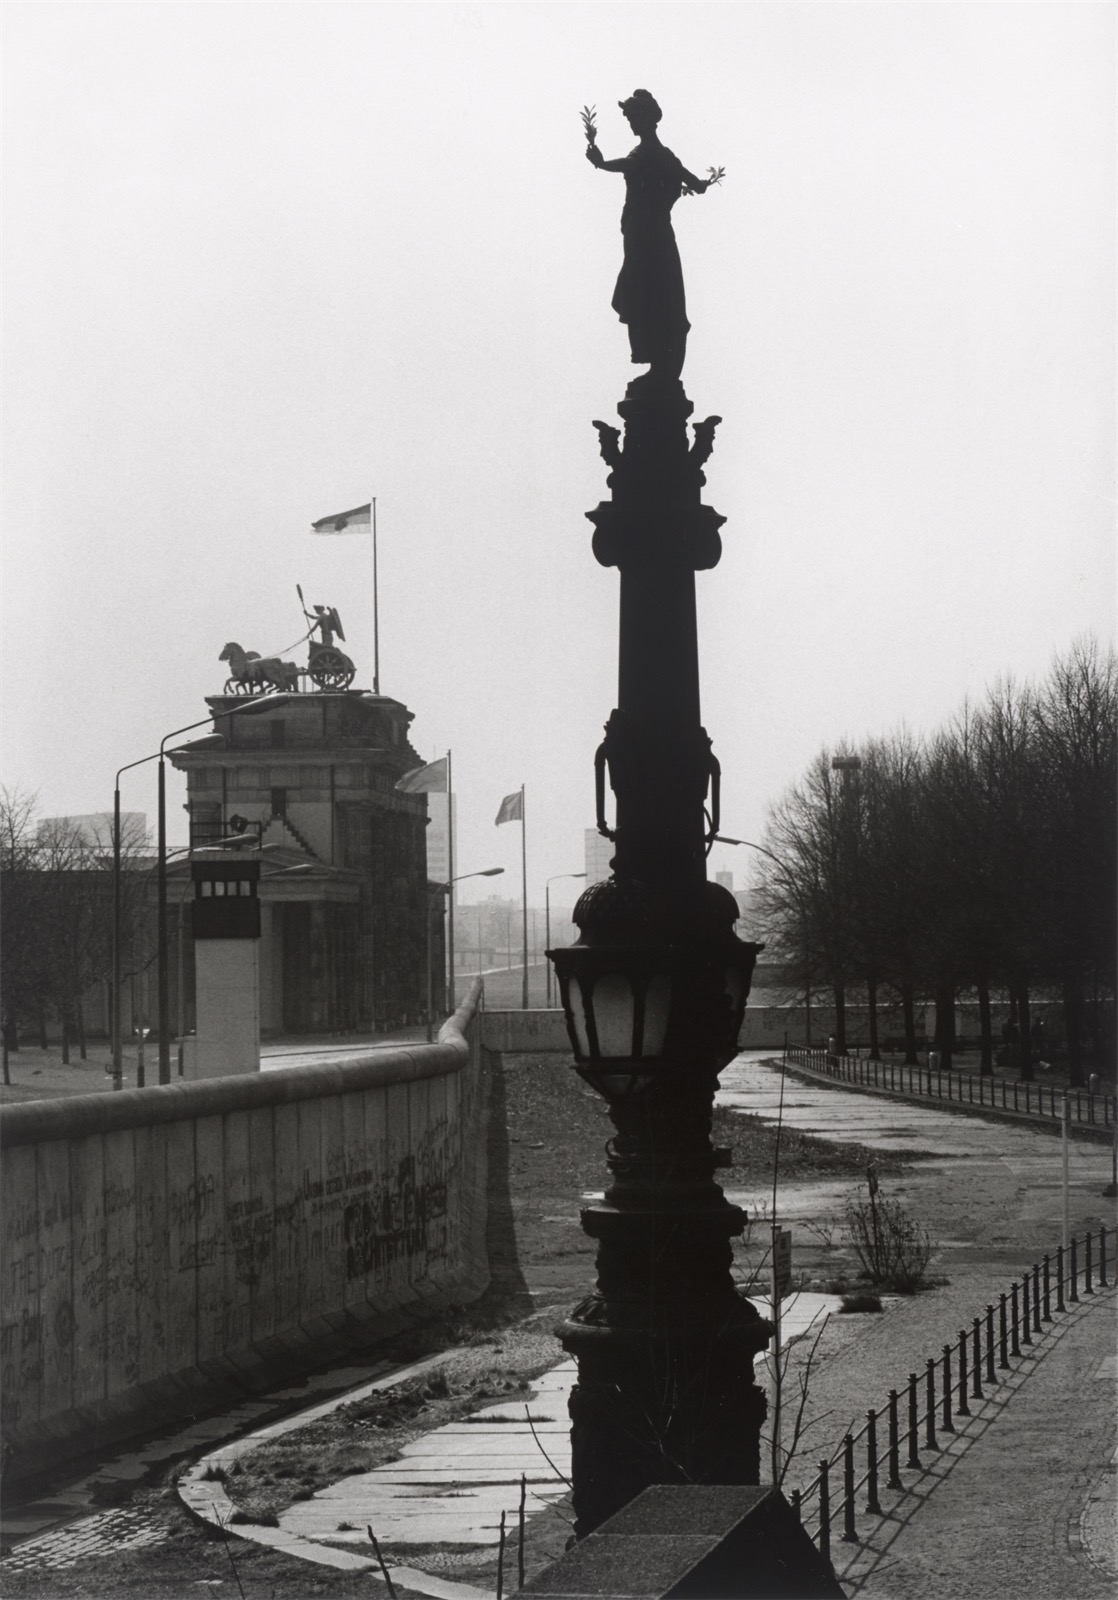 Barbara Klemm. ”Am Reichstag, Berlin, 1987”.